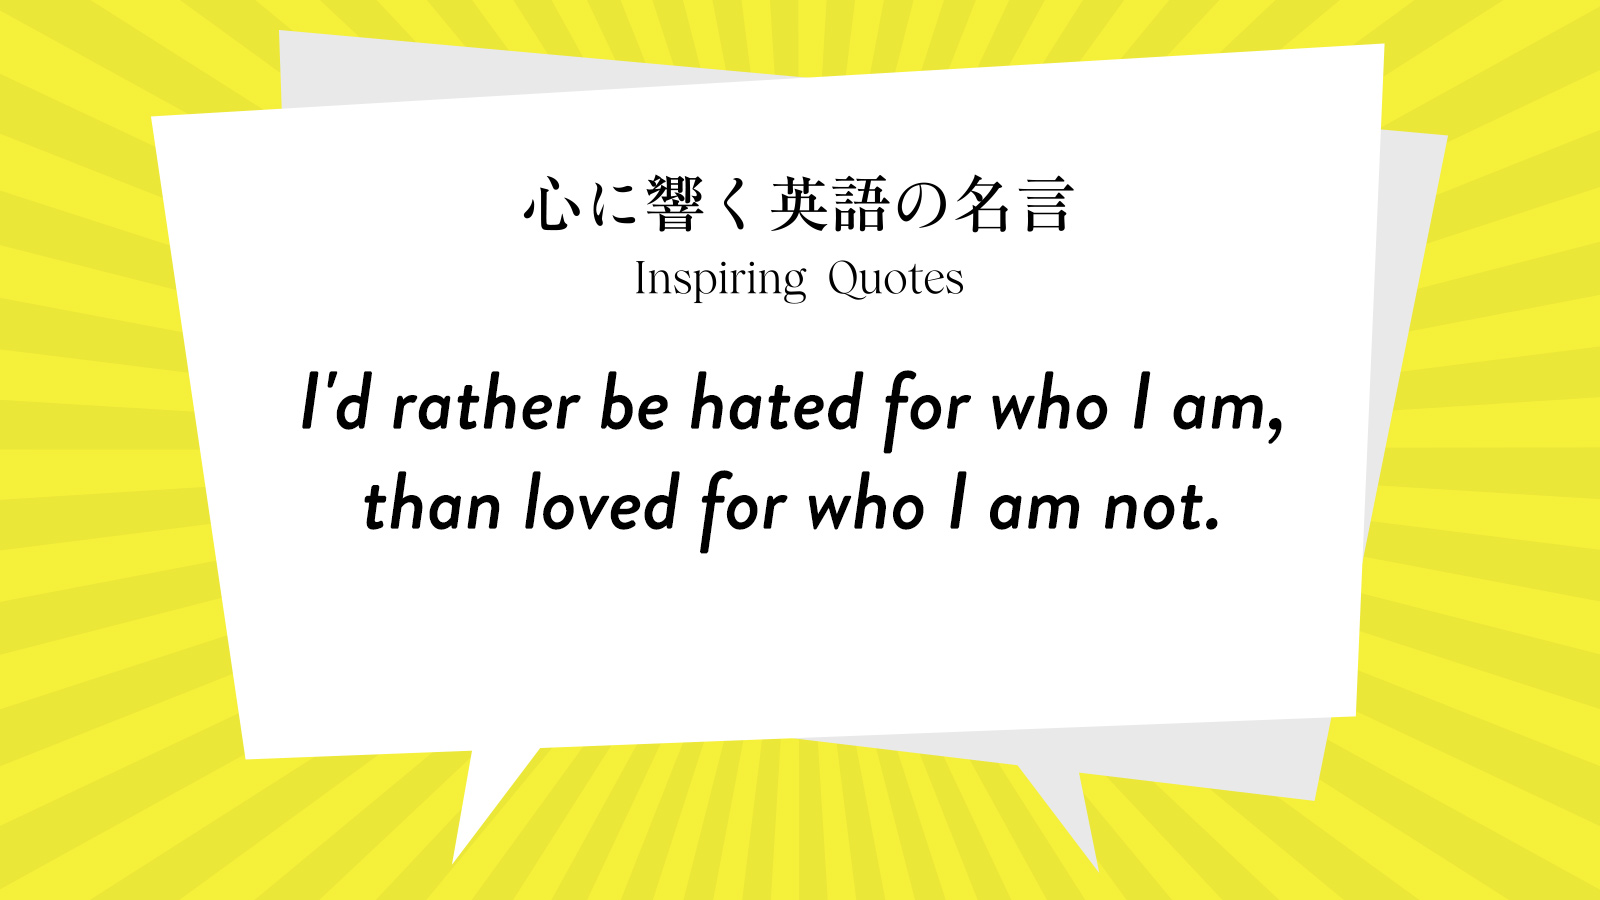 今週の名言 “I’d rather be hated for who I am, than loved for who I am not.” | Inspiring Quotes: 心に響く英語の名言